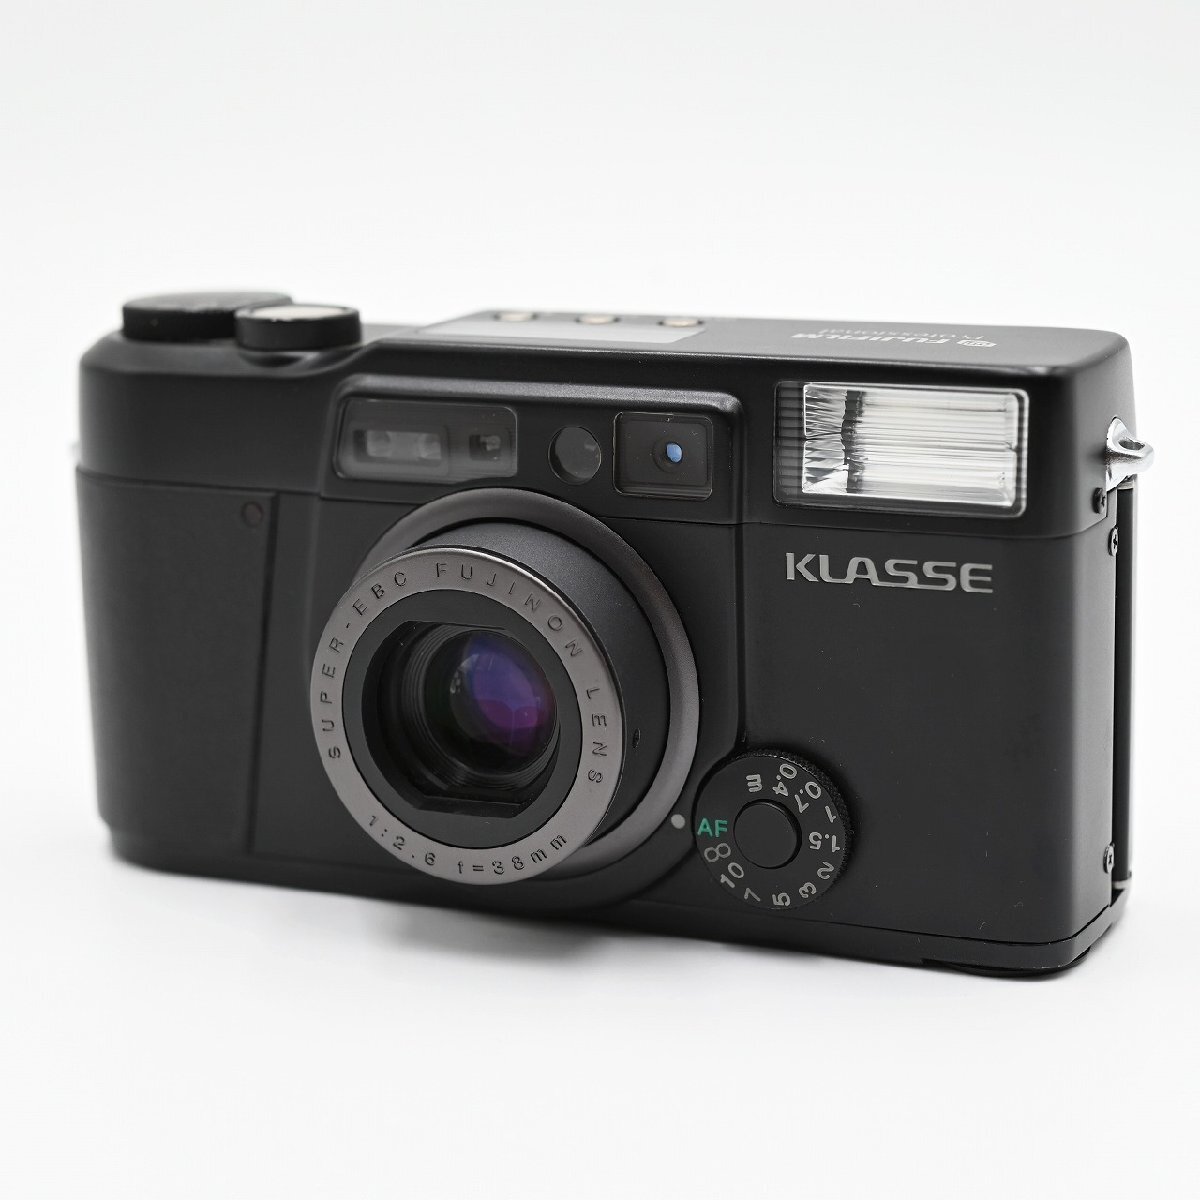 【元箱付き】FUJIFILM KLASSE 35ｍｍコンパクトフィルムカメラ F2.6 38mm Black フィルムカメラ